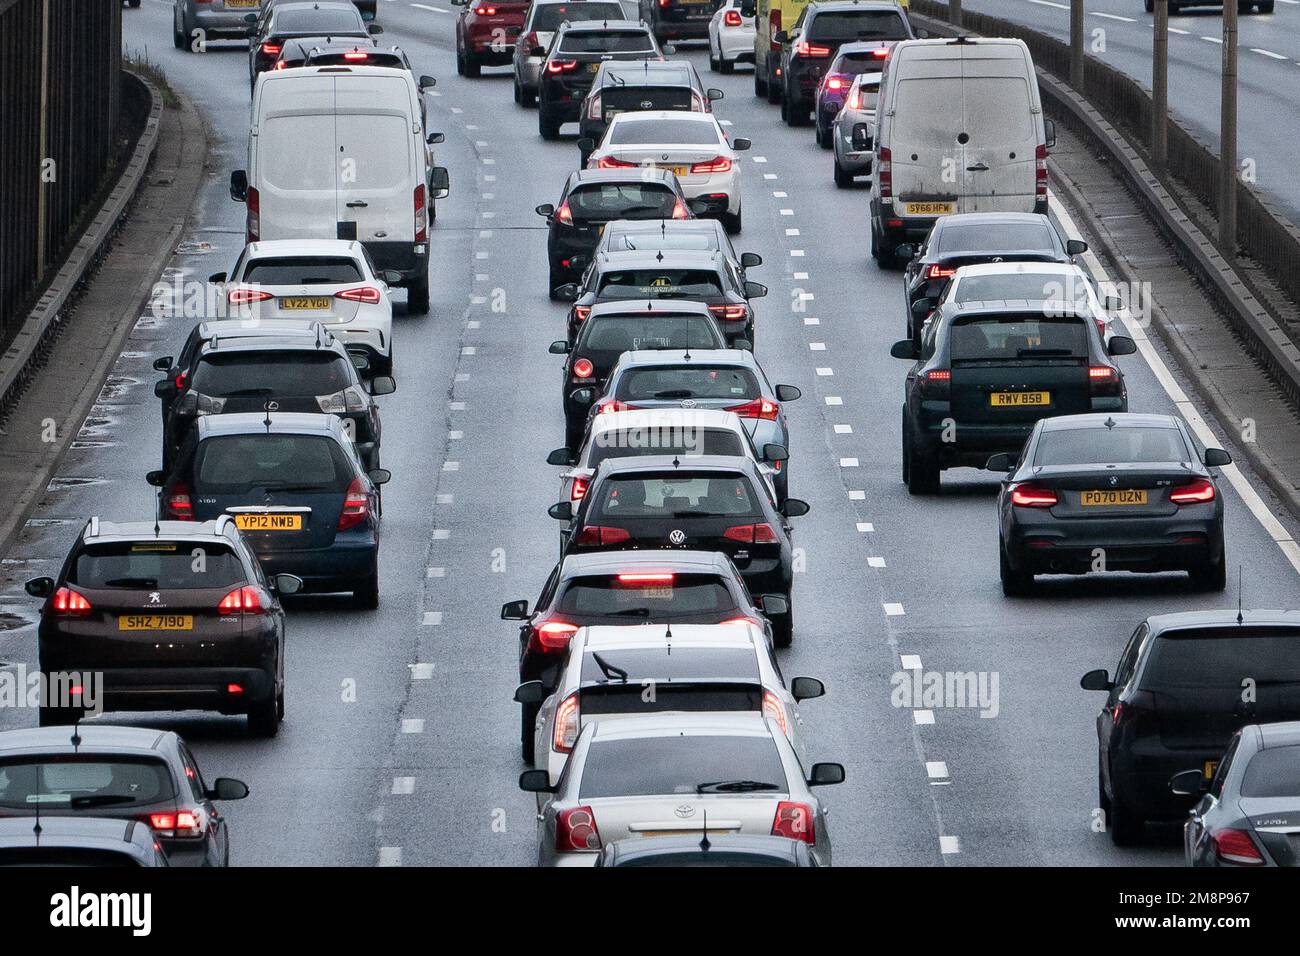 Foto de archivo fechada el 23/12/22 del tráfico el A13 en Londres. Los  automovilistas podrían estar atascados en una congestión casi el doble que  los niveles actuales si los automóviles autónomos se